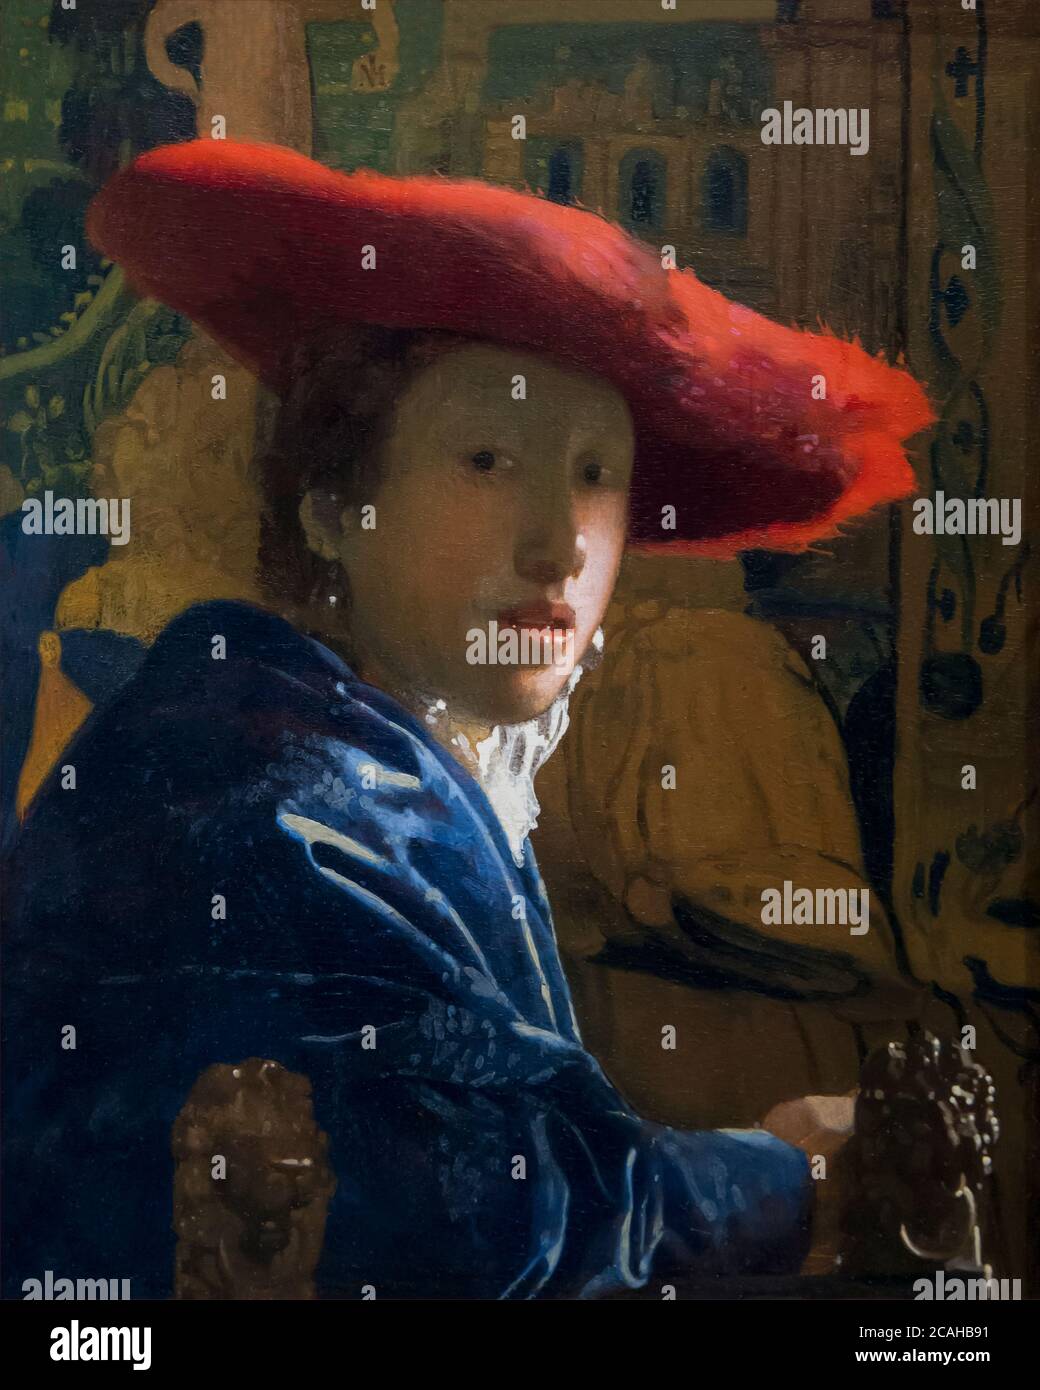 La fille avec la Red Hat, Johannes Vermeer, vers 1665, National Gallery of Art, Washington DC, USA, Amérique du Nord Banque D'Images